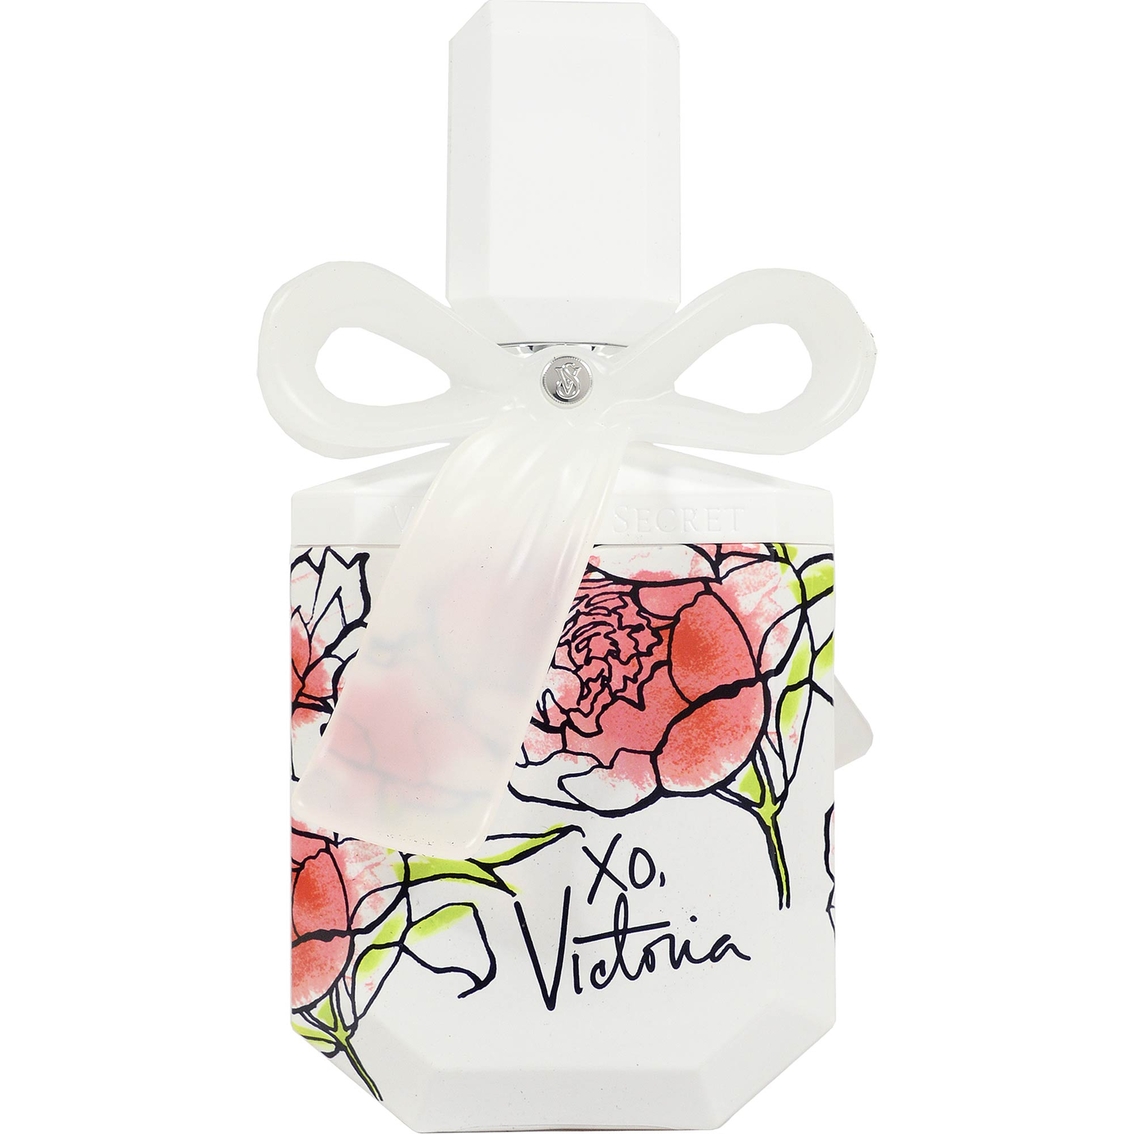 Victoria's Secret Xo, Victoria Eau De Parfum | Women's Fragrances ...